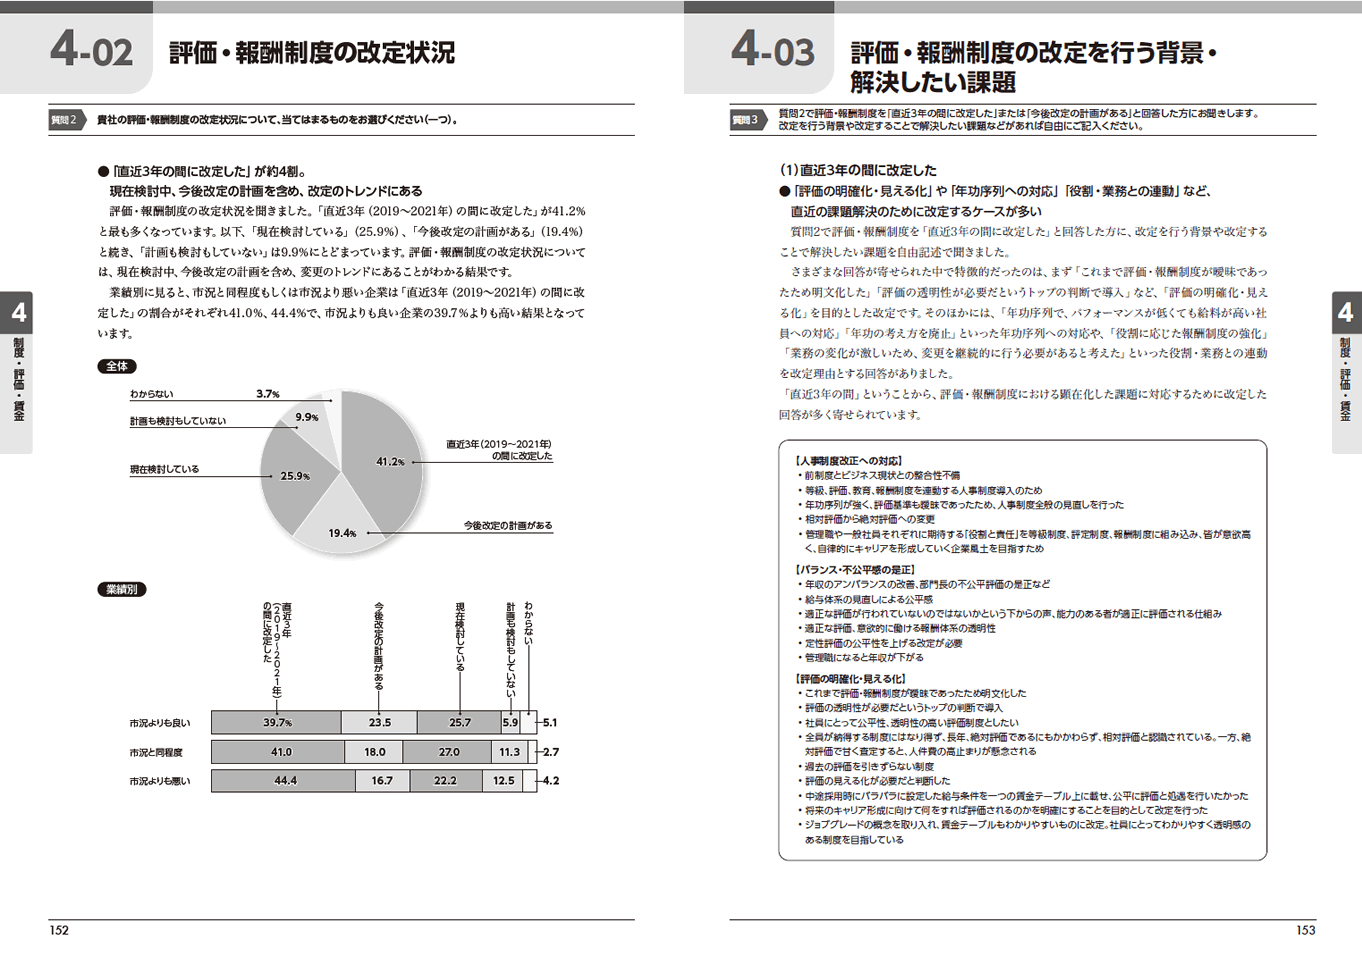 『人事白書2022』サンプルページ(4.制度・評価・賃金)